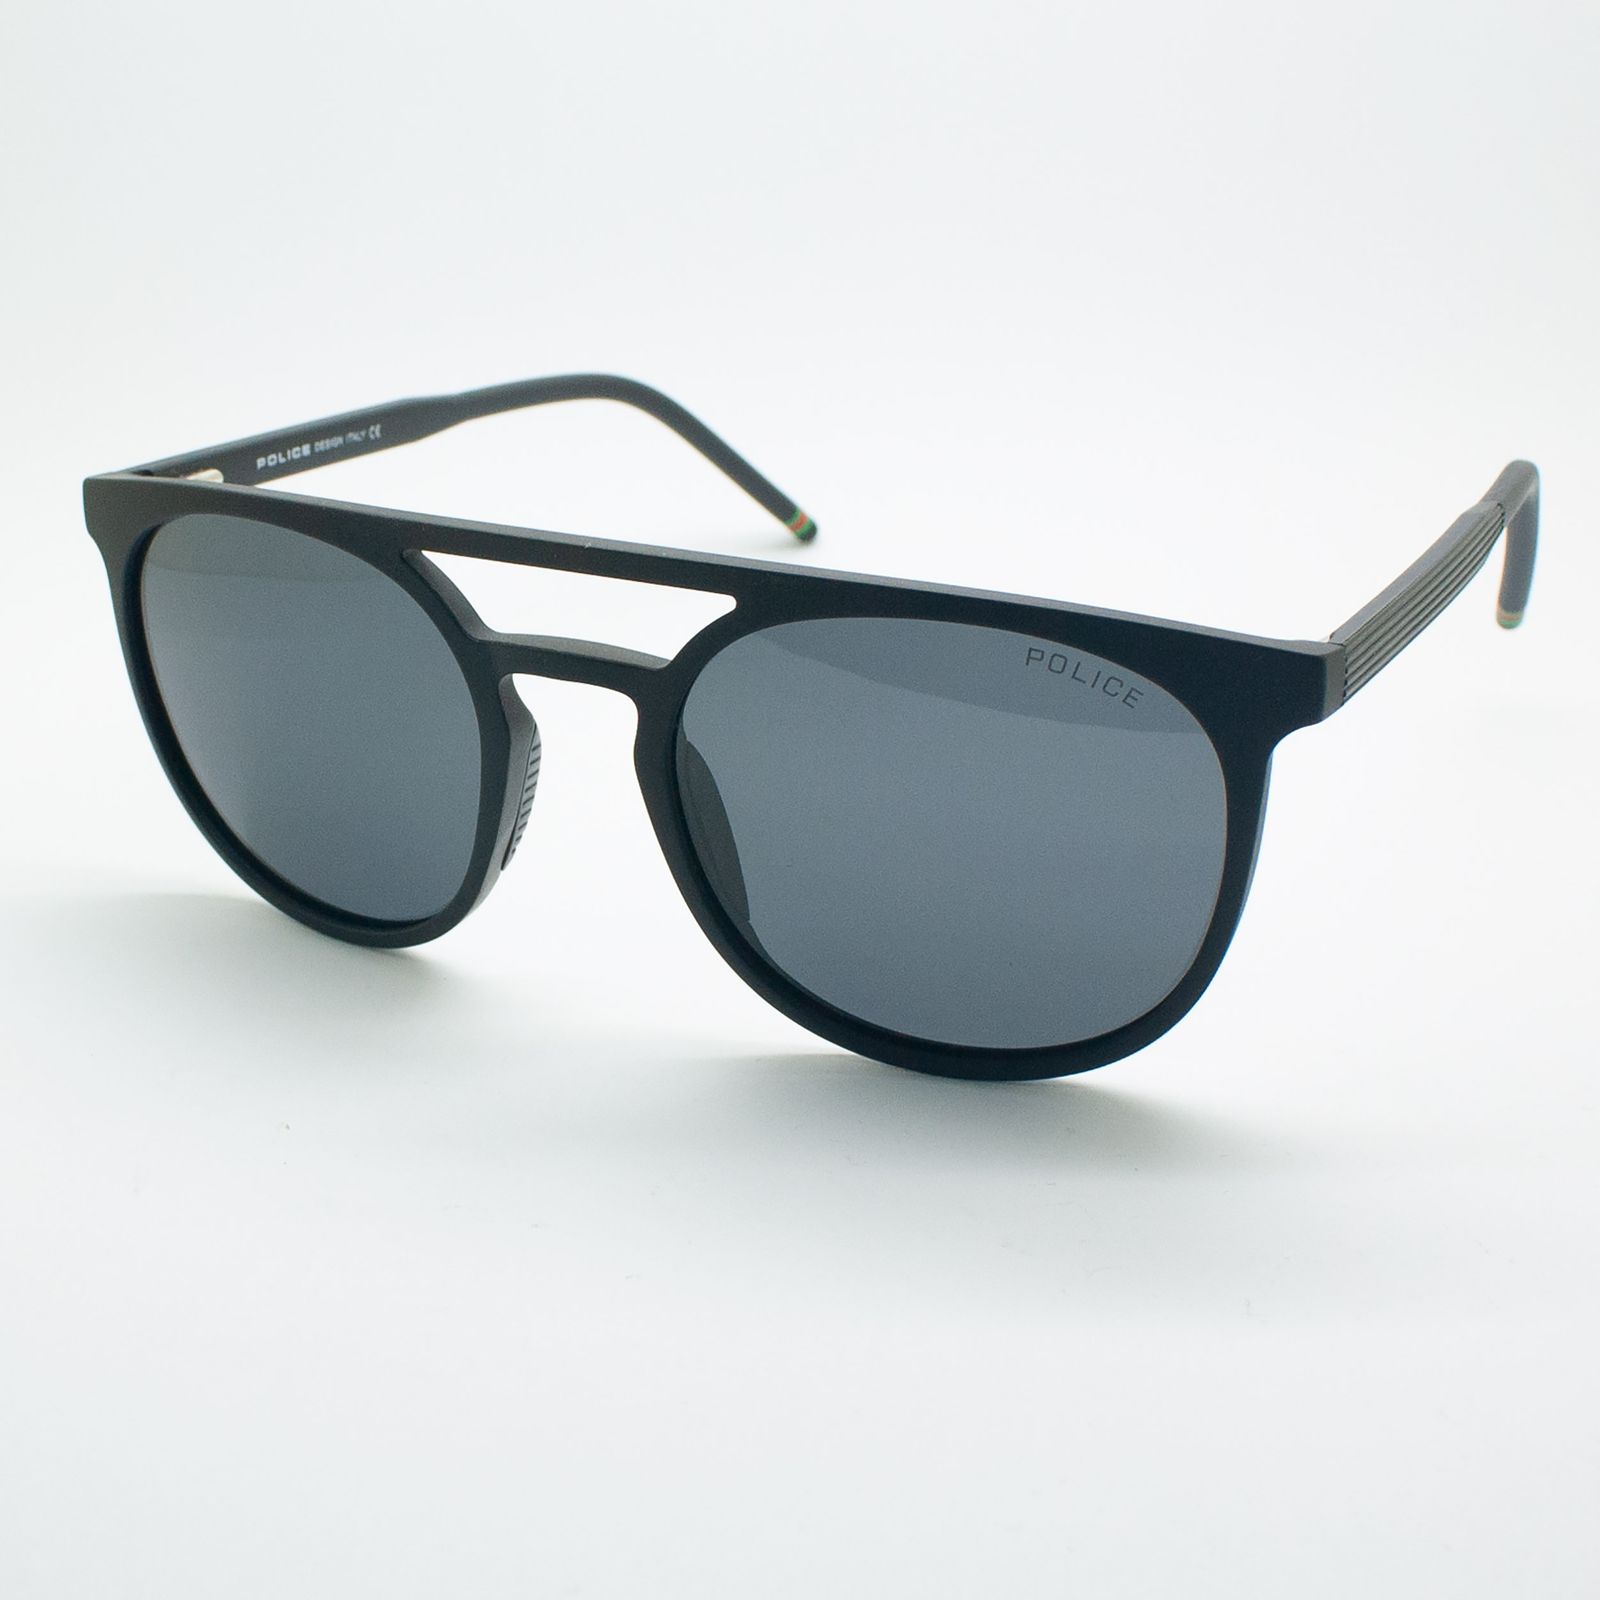 عینک آفتابی پلیس مدل FC05-11 C01 -  - 4